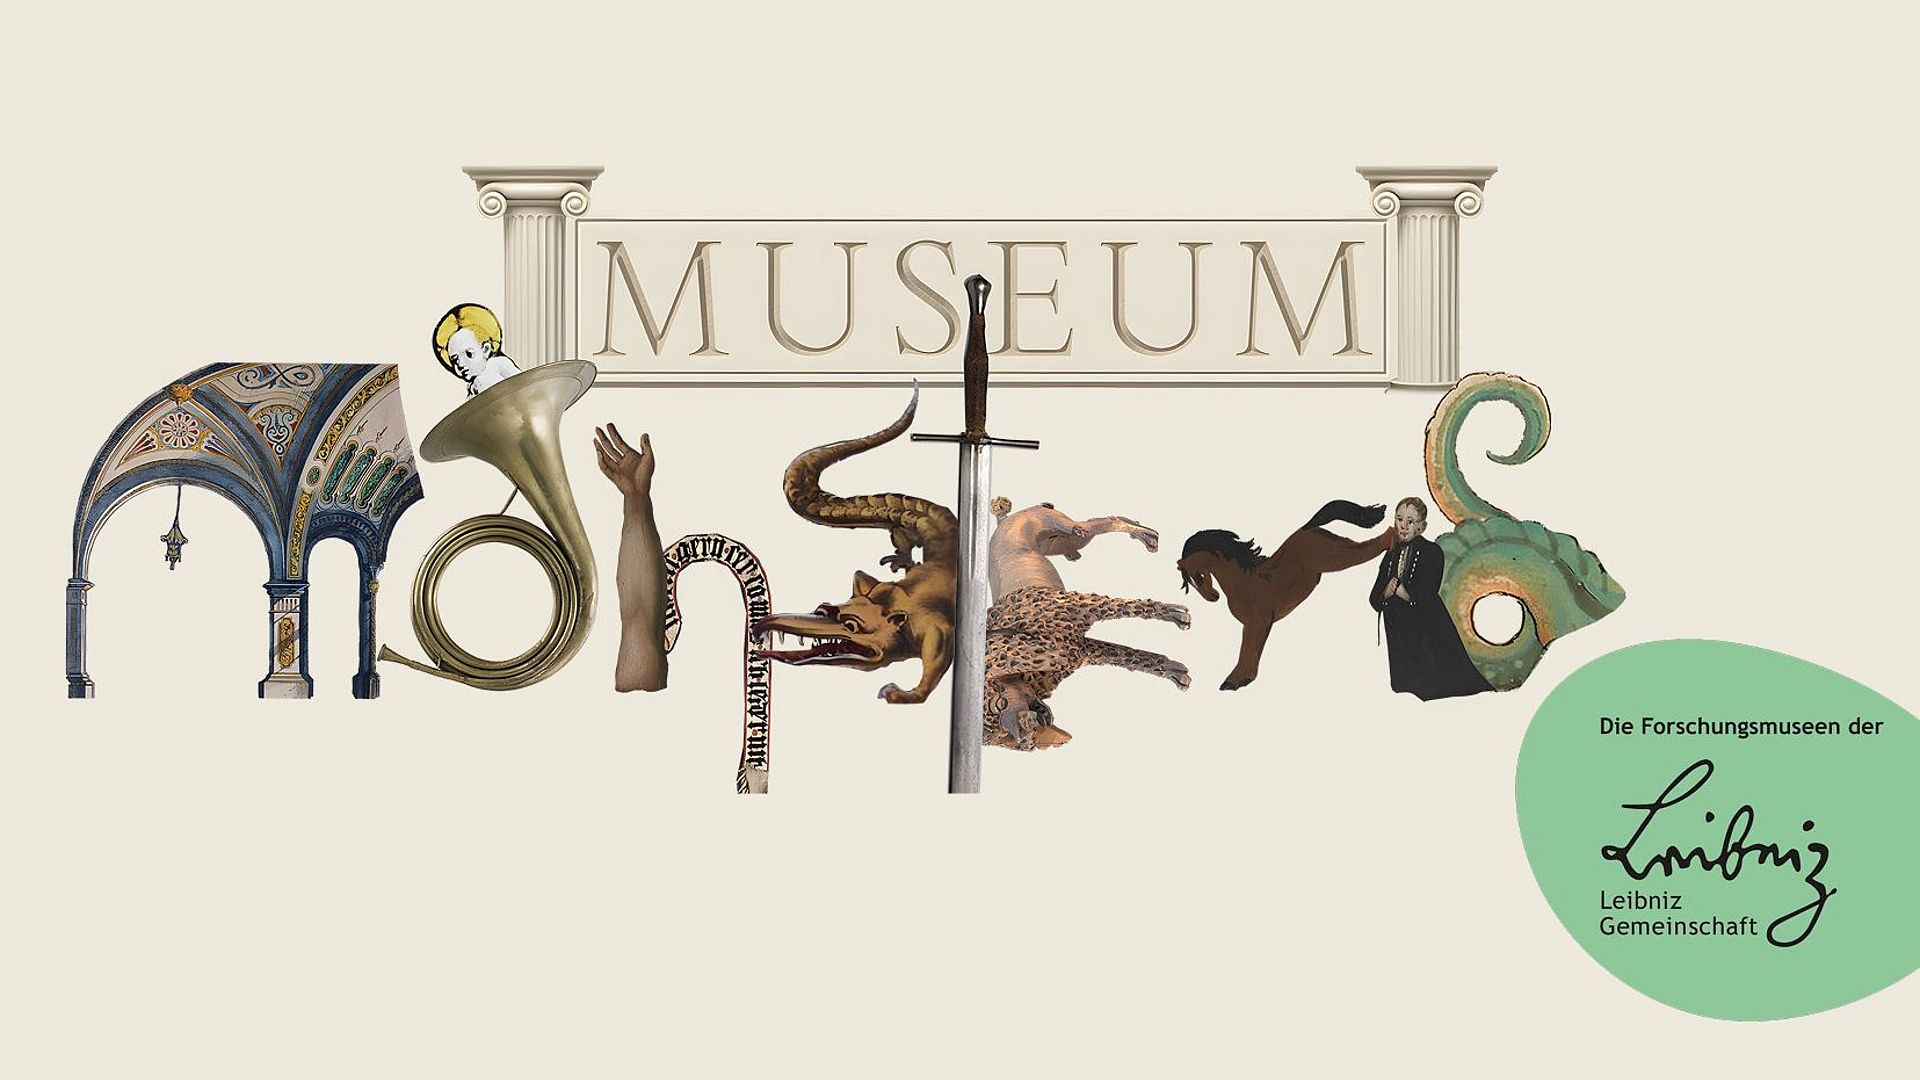 Schriftzug "Museum Monsters". Das Wort "Monsters" ist aus Kreaturen und Objekten zusammengesetzt.